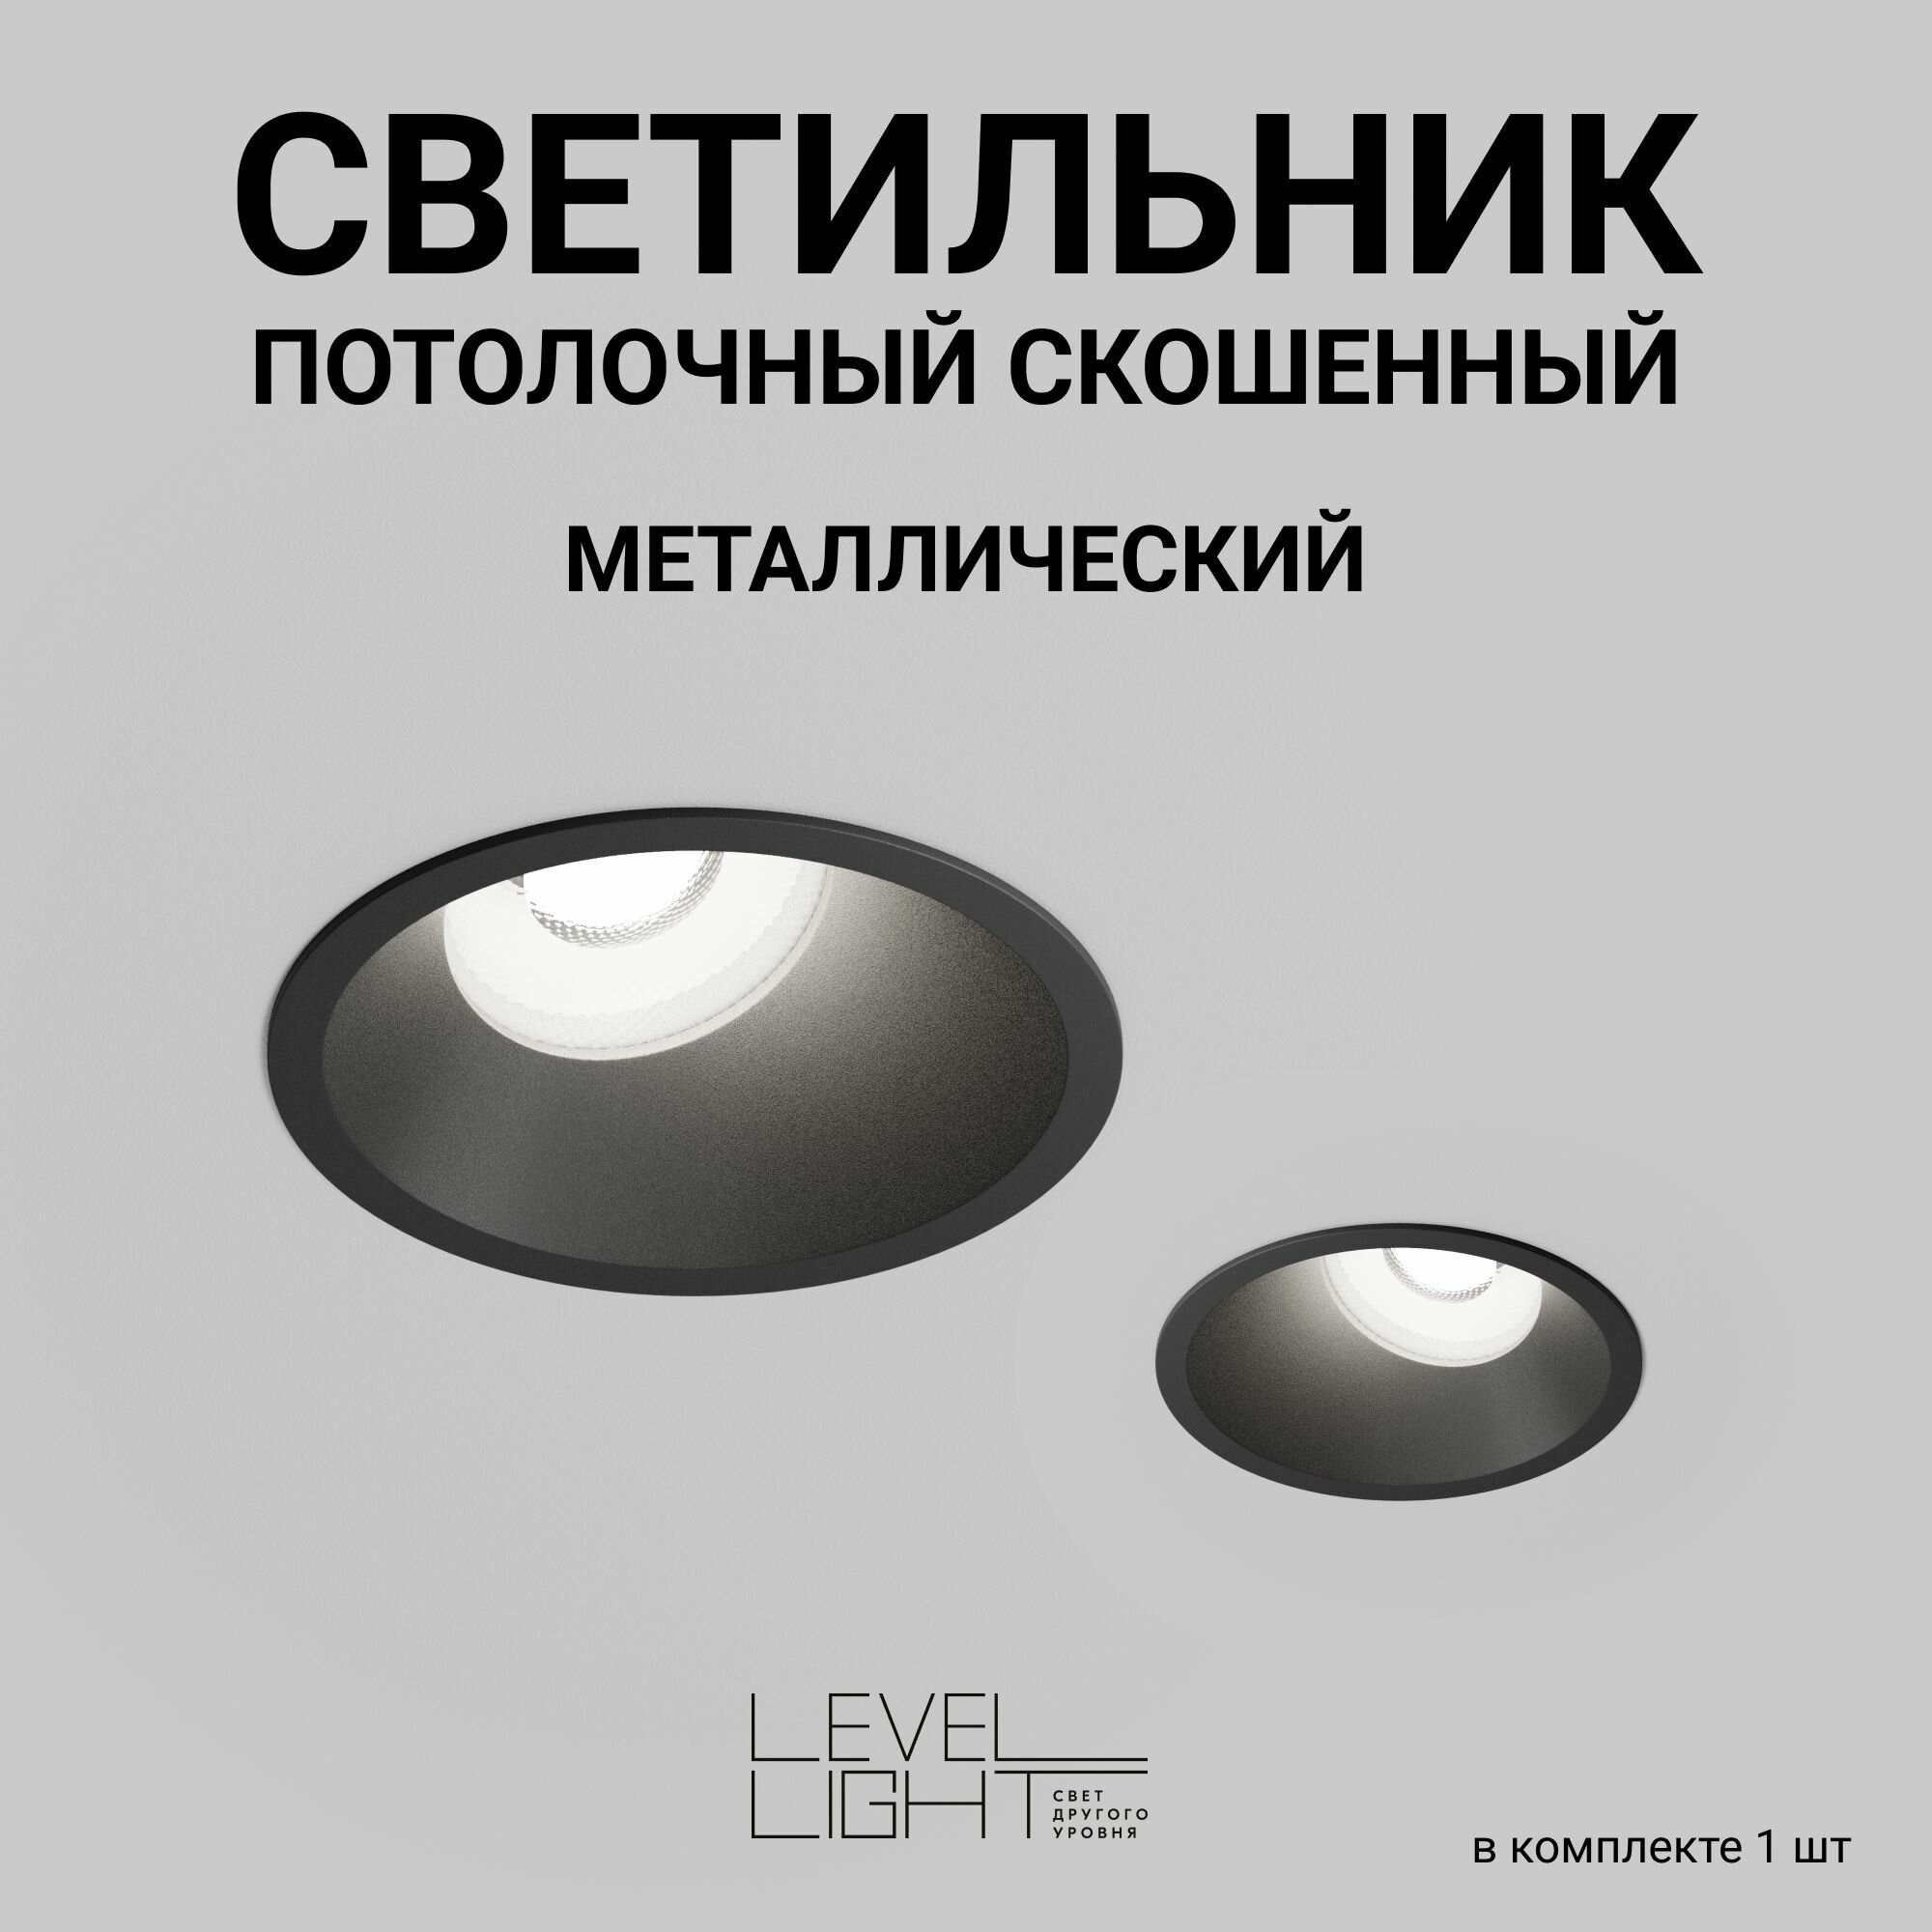 Скошенный встраиваемый точечный светильник, потолочный спотовый Level Light Hide UP-C2011RB, IP20, черный, круглый, алюминиевый